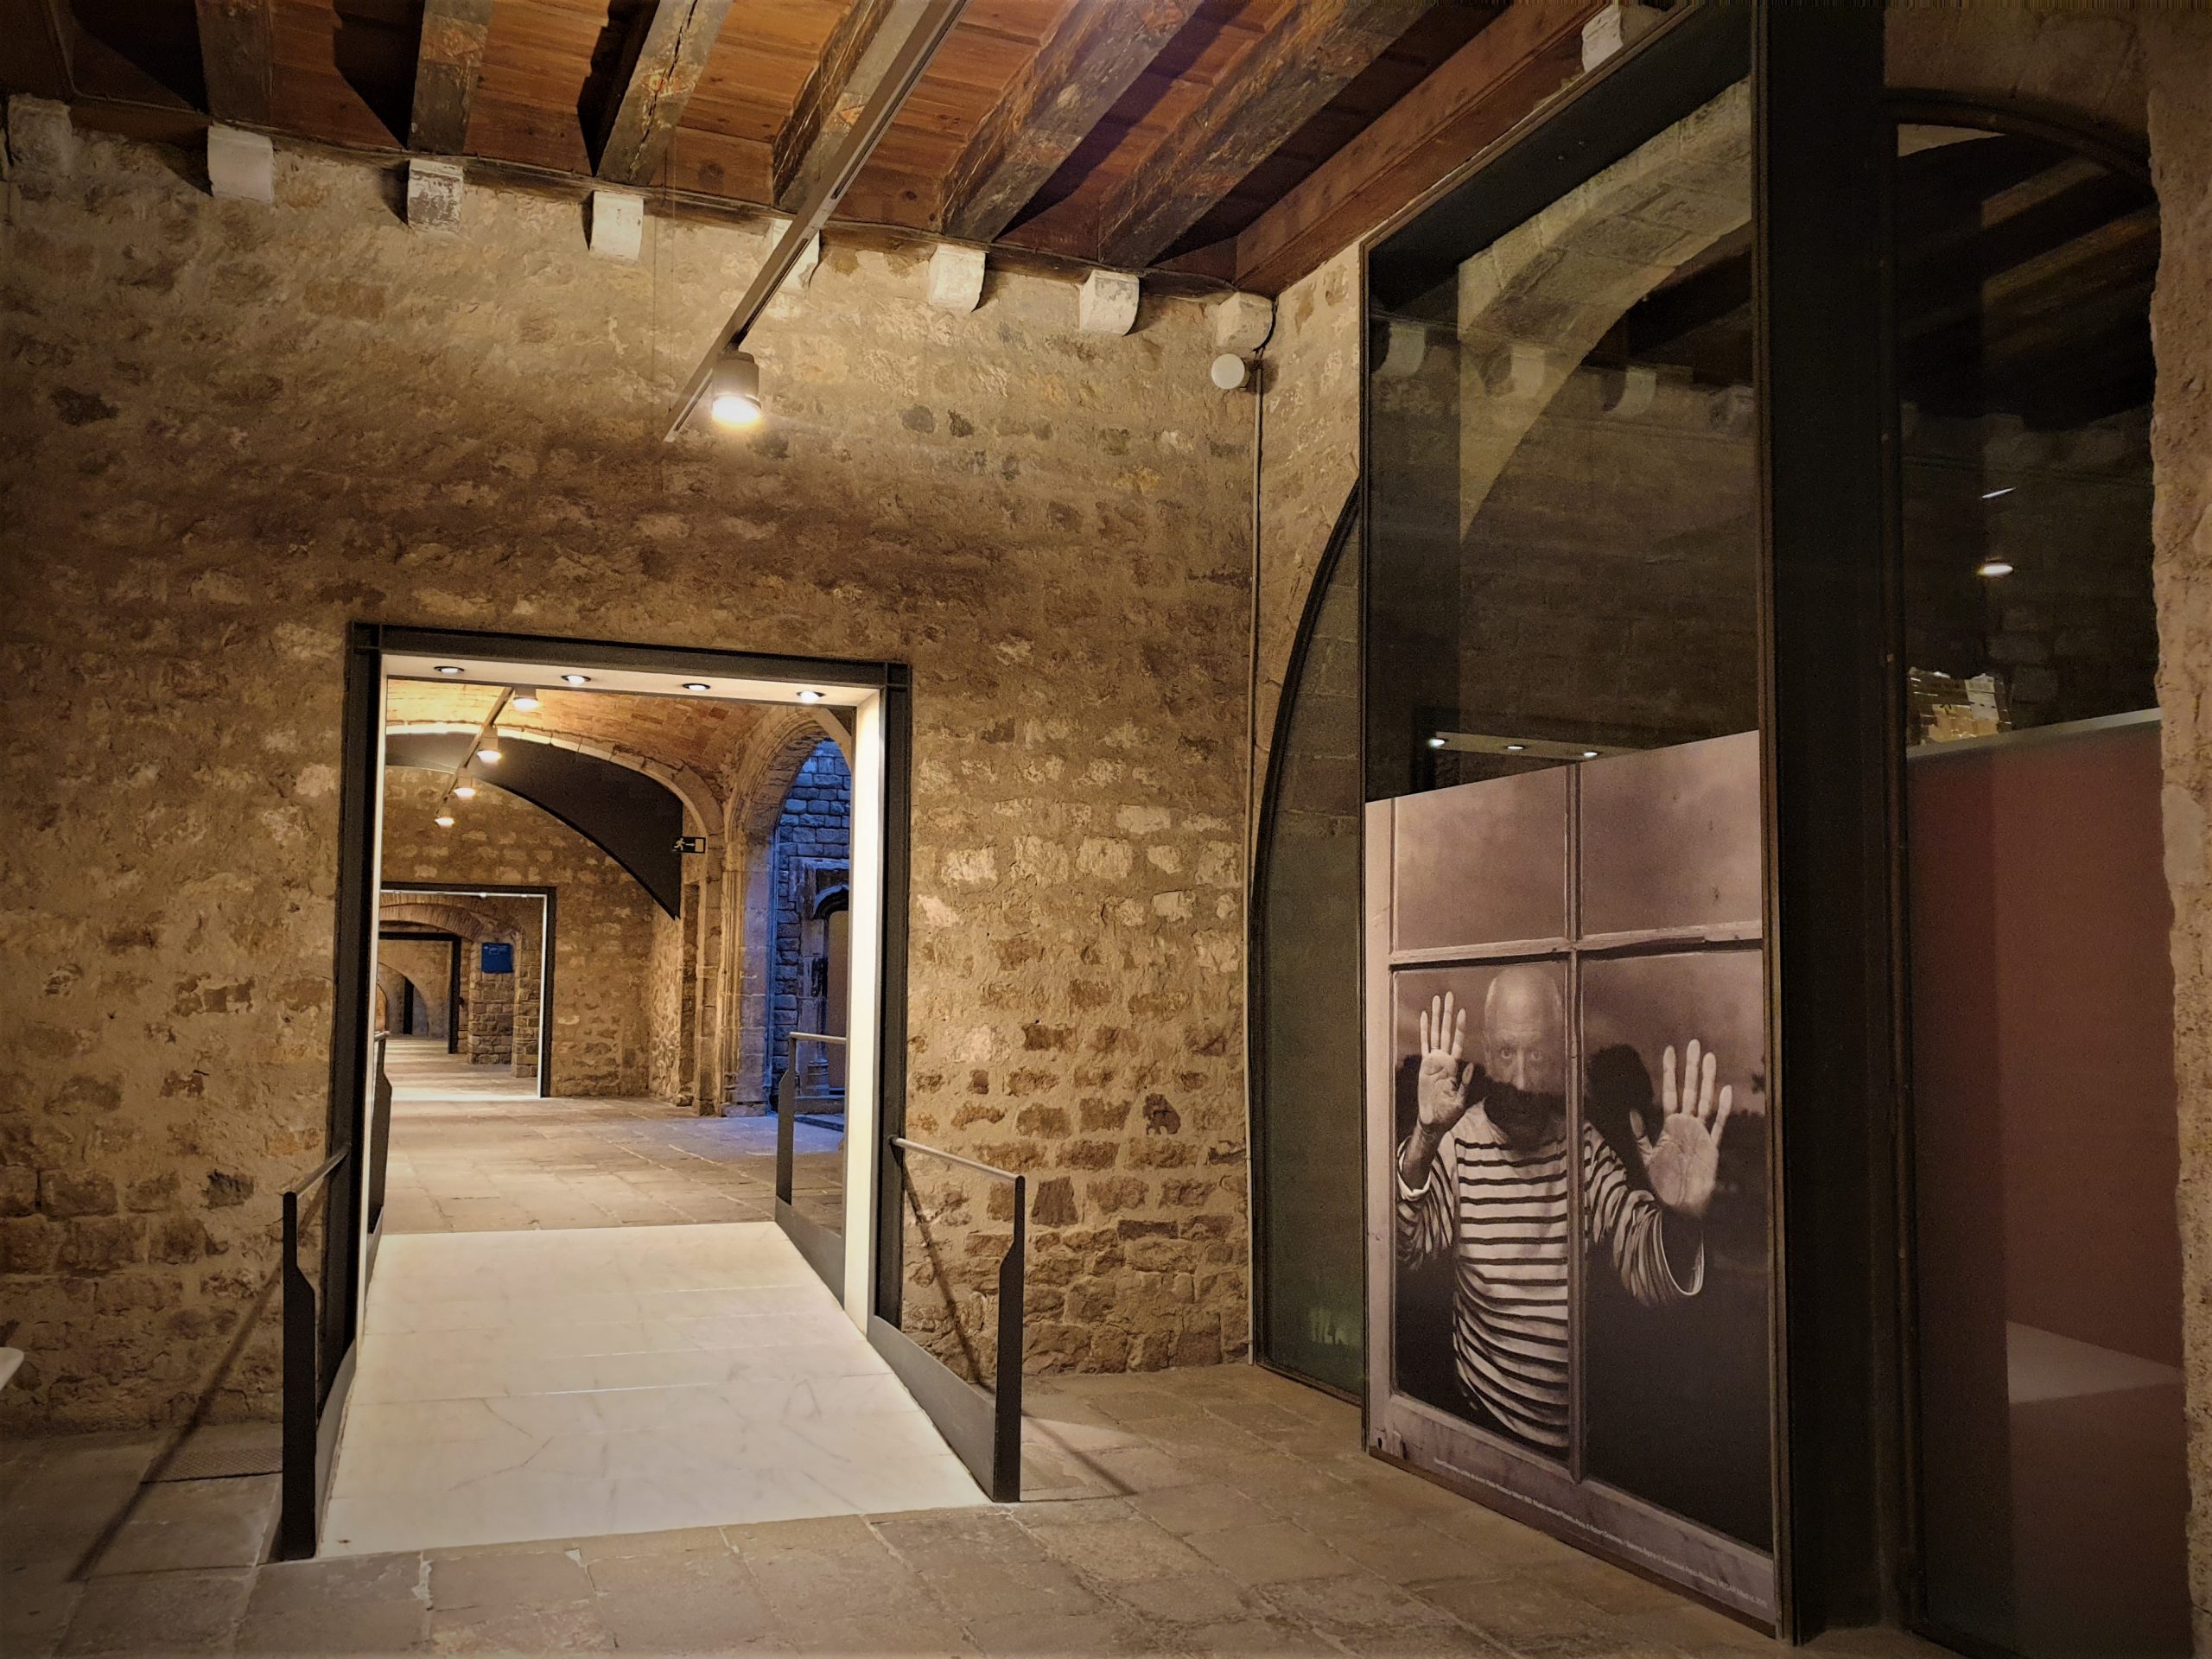 Cours médiévales, l'entrée du musée Picasso, Barcelone.